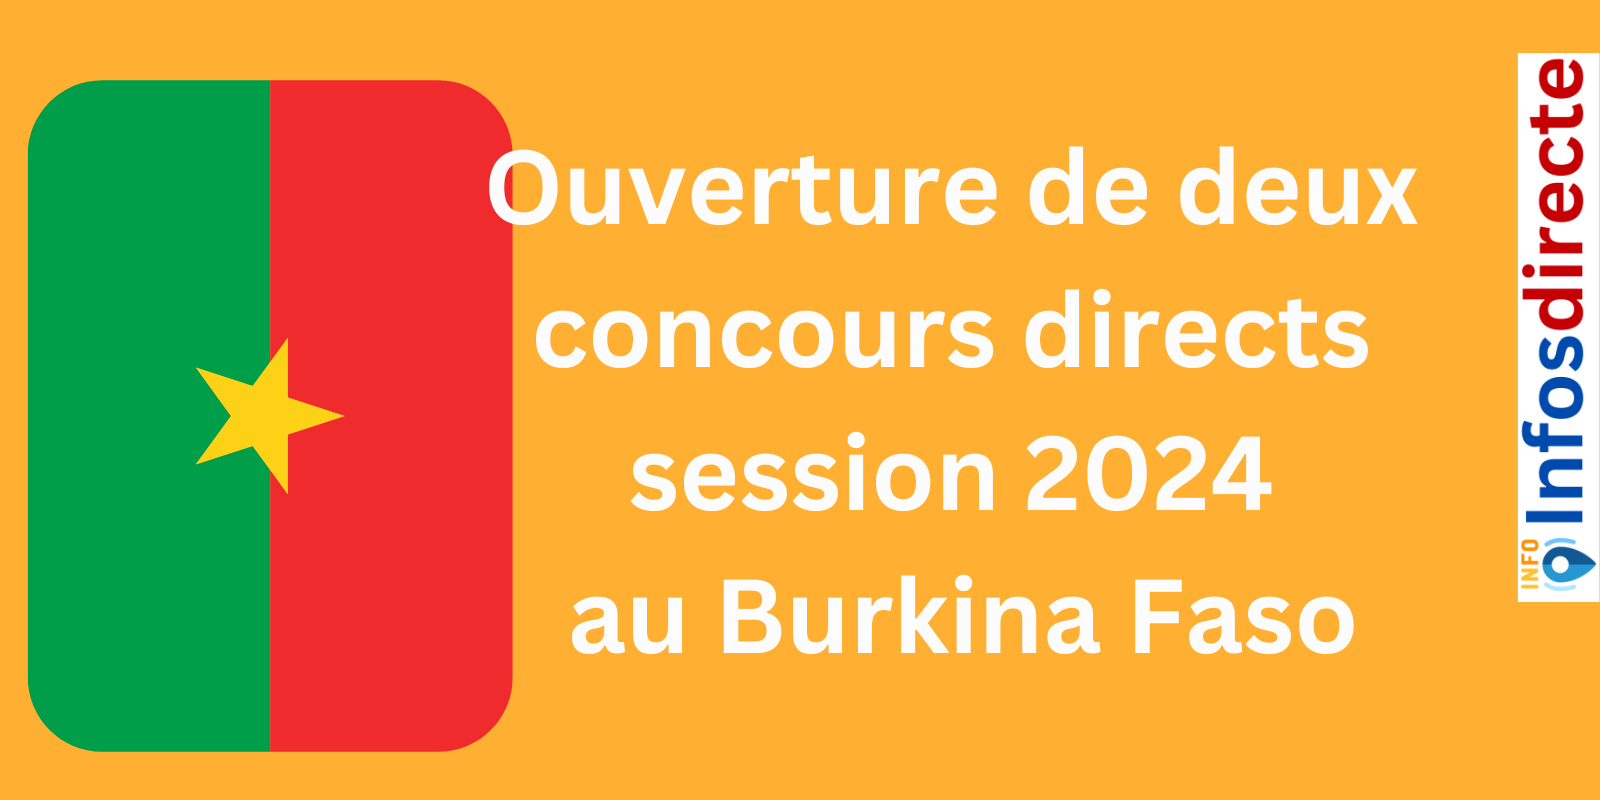 Ouverture de deux concours directs session 2024 au Burkina Faso